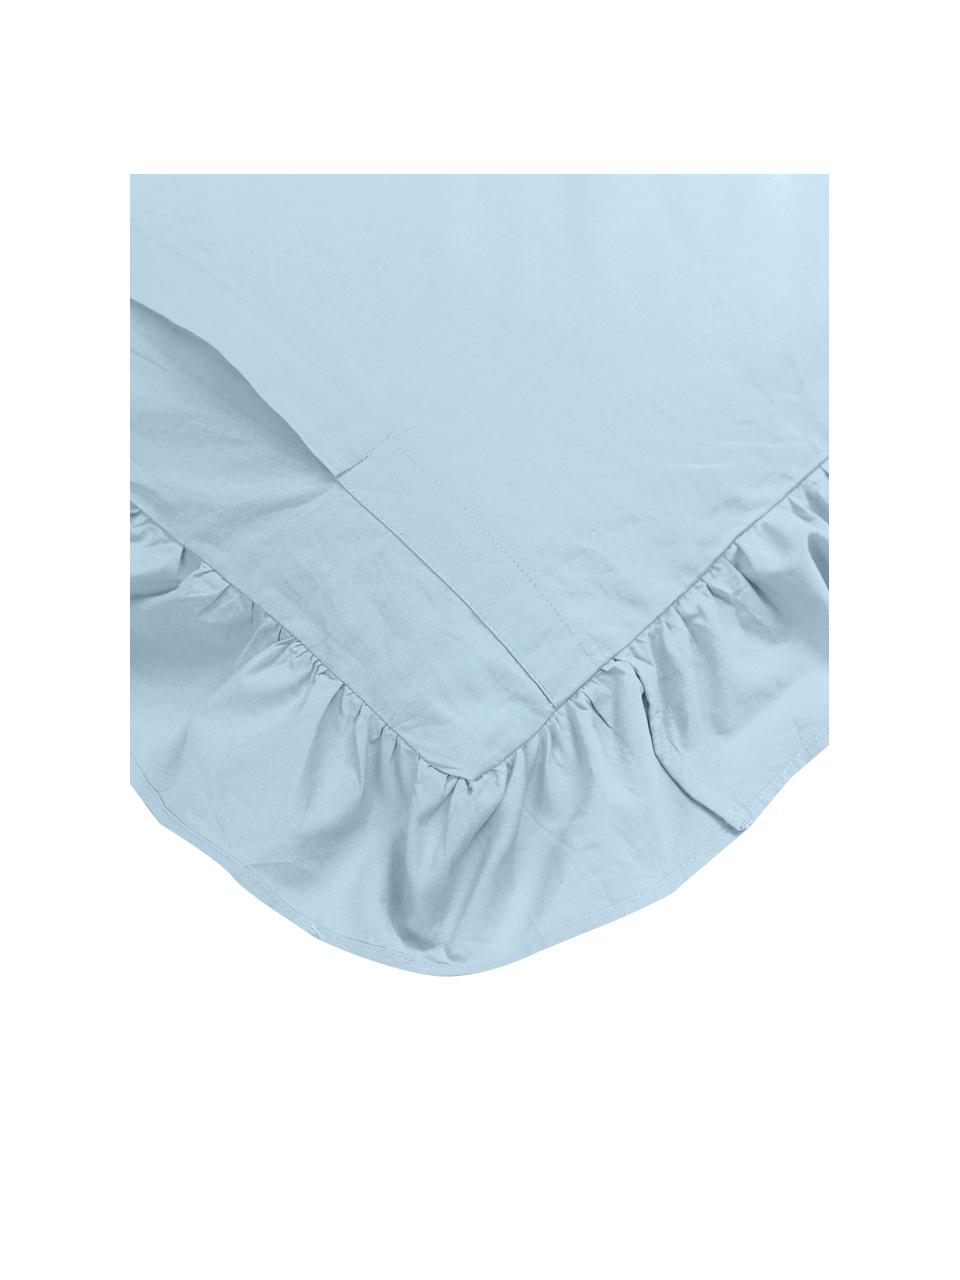 Taies d'oreiller en coton lavé bleu à volants Florence, 2 pièces, Bleu ciel, 50 x 70 cm